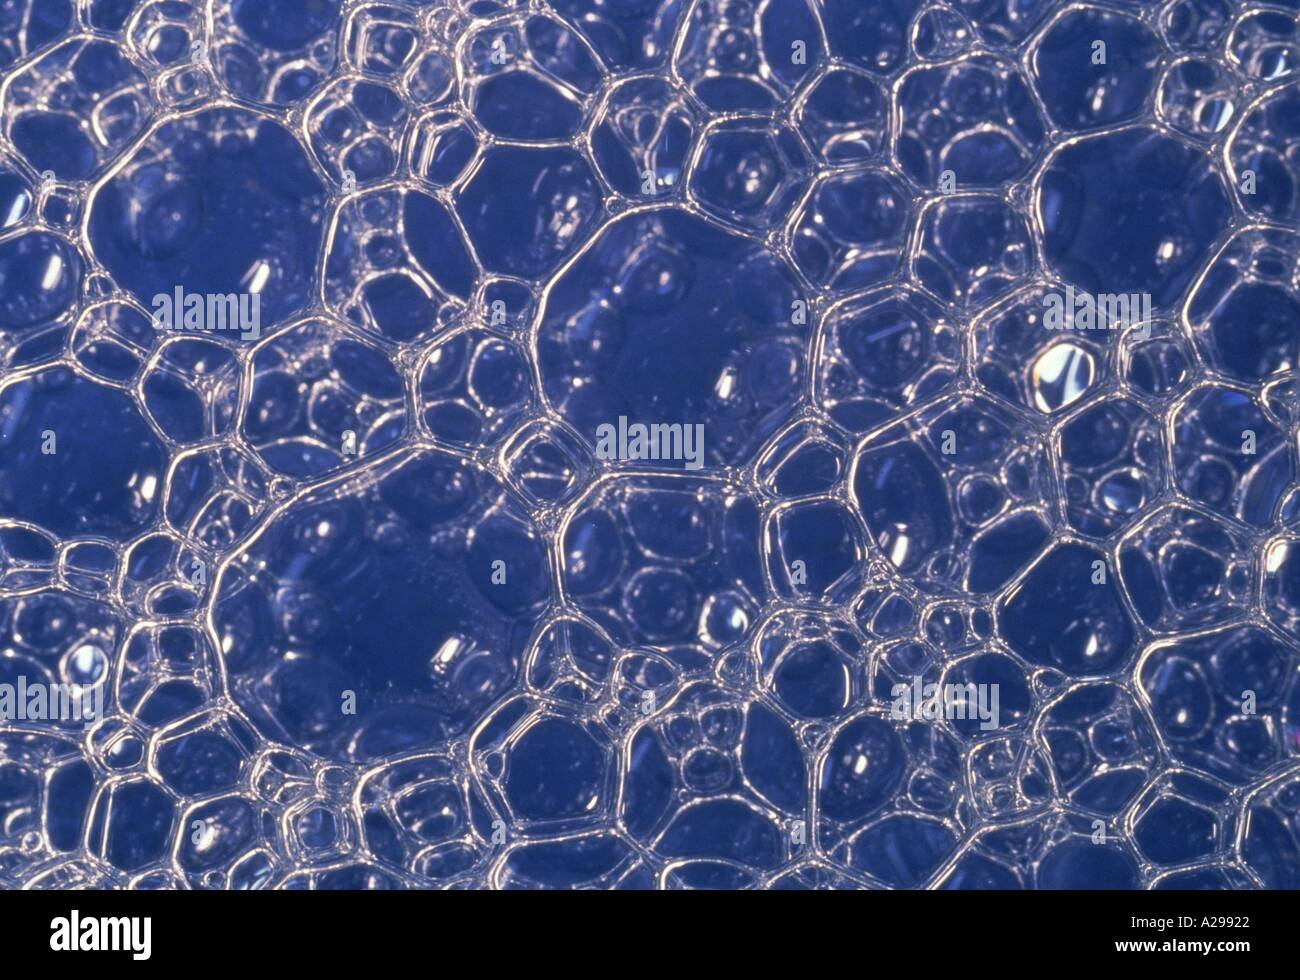 Seifenblasen in einer blauen Schüssel illustrieren sechseckigen Verpackung Array Global Bilder Stockfoto